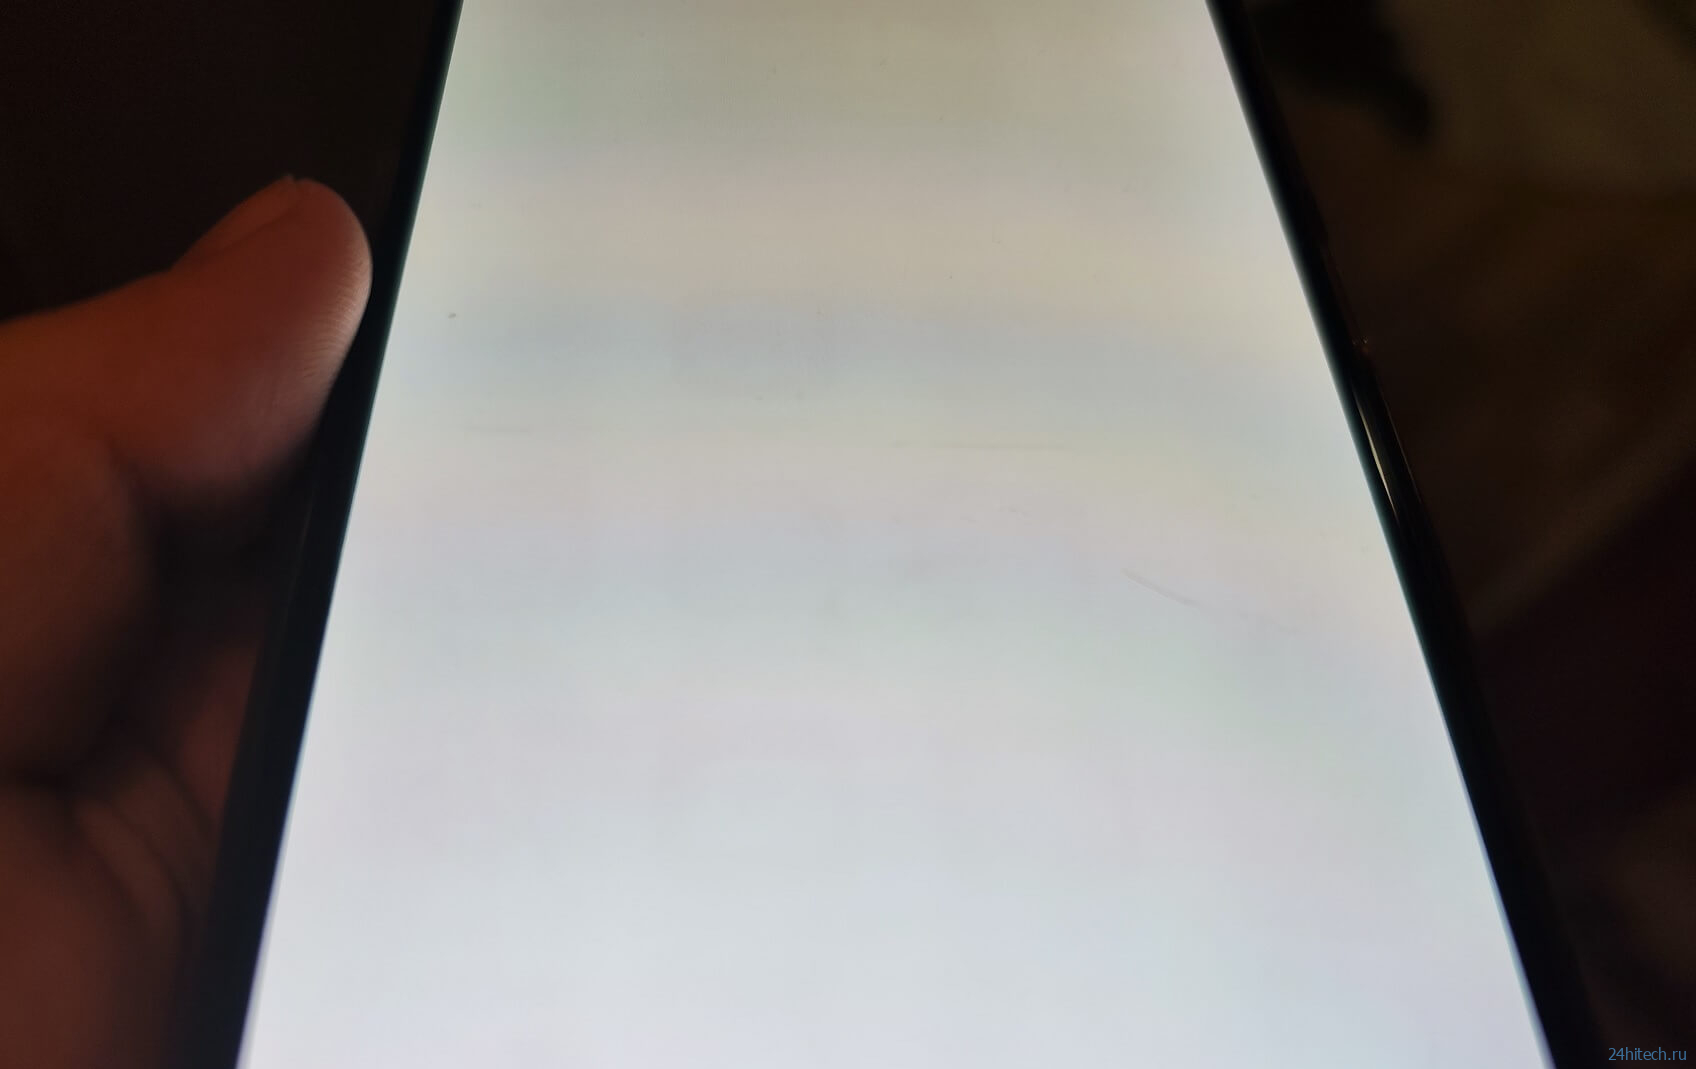 На моем смартфоне Redmi Note 10 Pro выгорел экран. Объясняю, почему это произошло